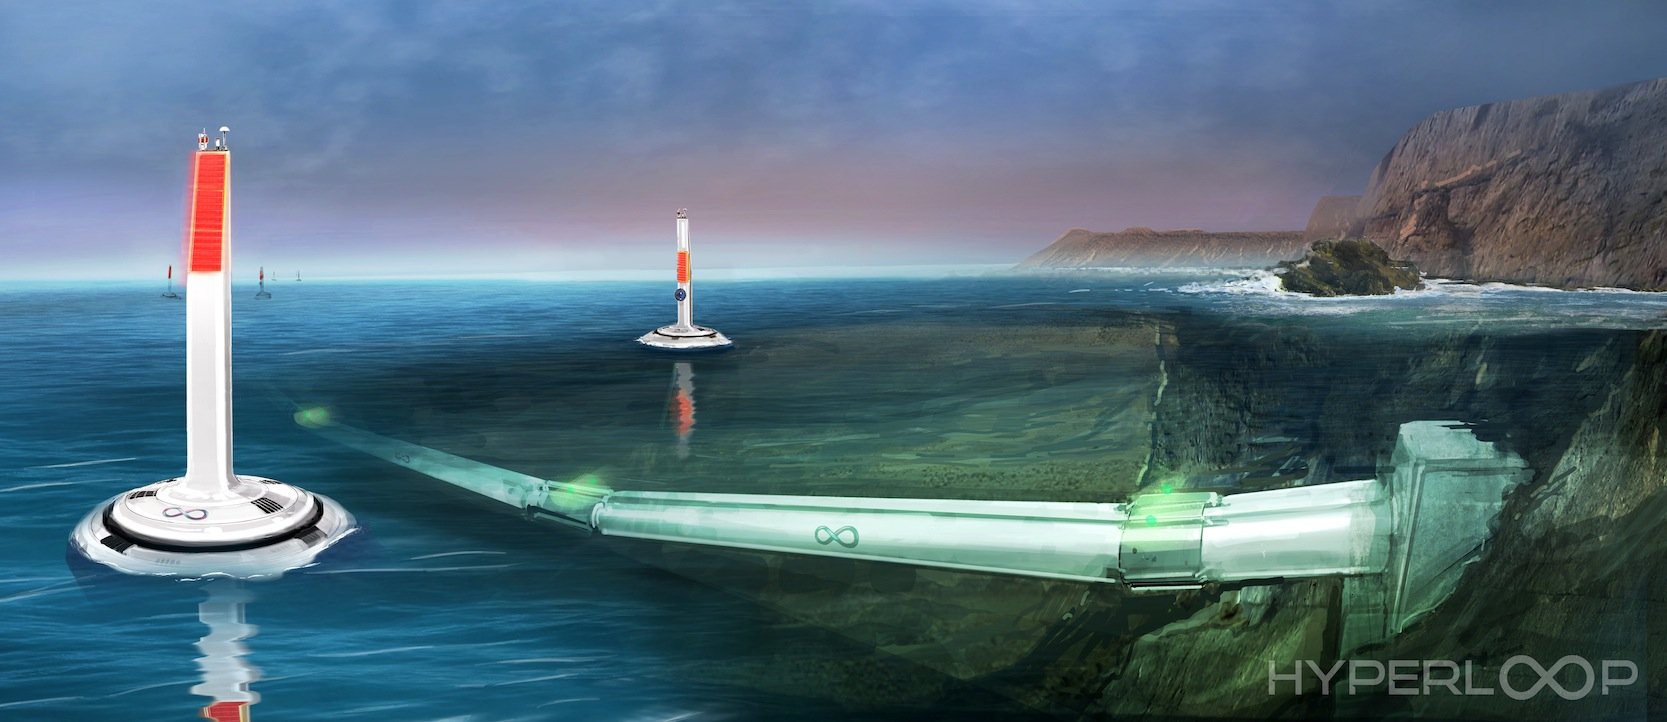 Nicht nur an Land, auch unter Wasser lassen sich Hyperloop-Verbindungen denken.